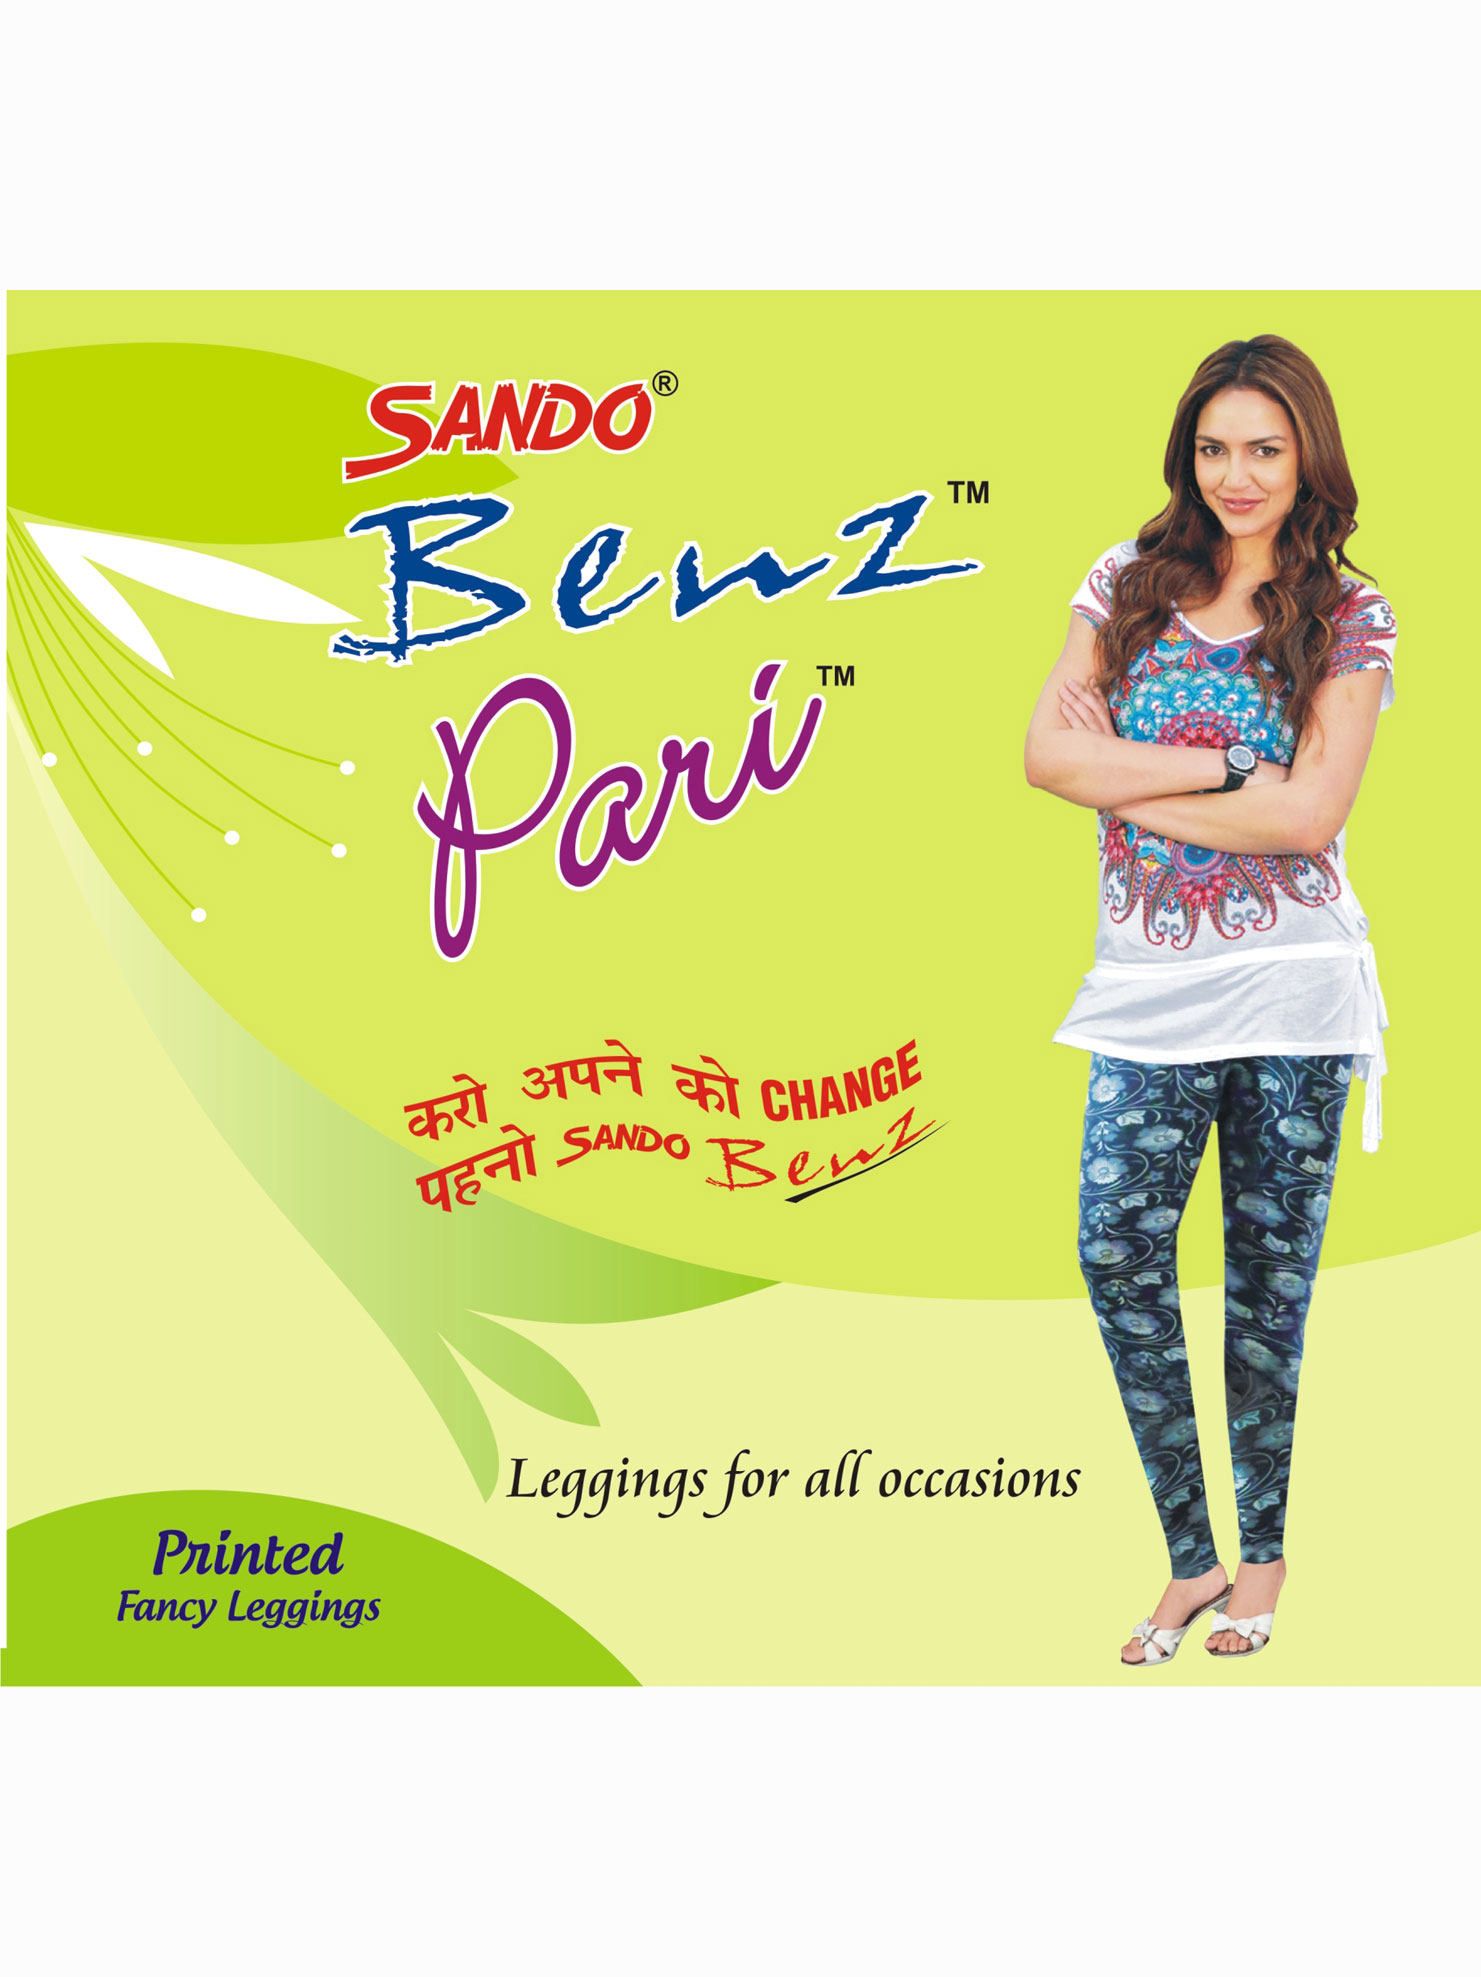 sando-benz-pari-priented-leggings-fd60fb57-sando benz pari priented leggings.jpg0